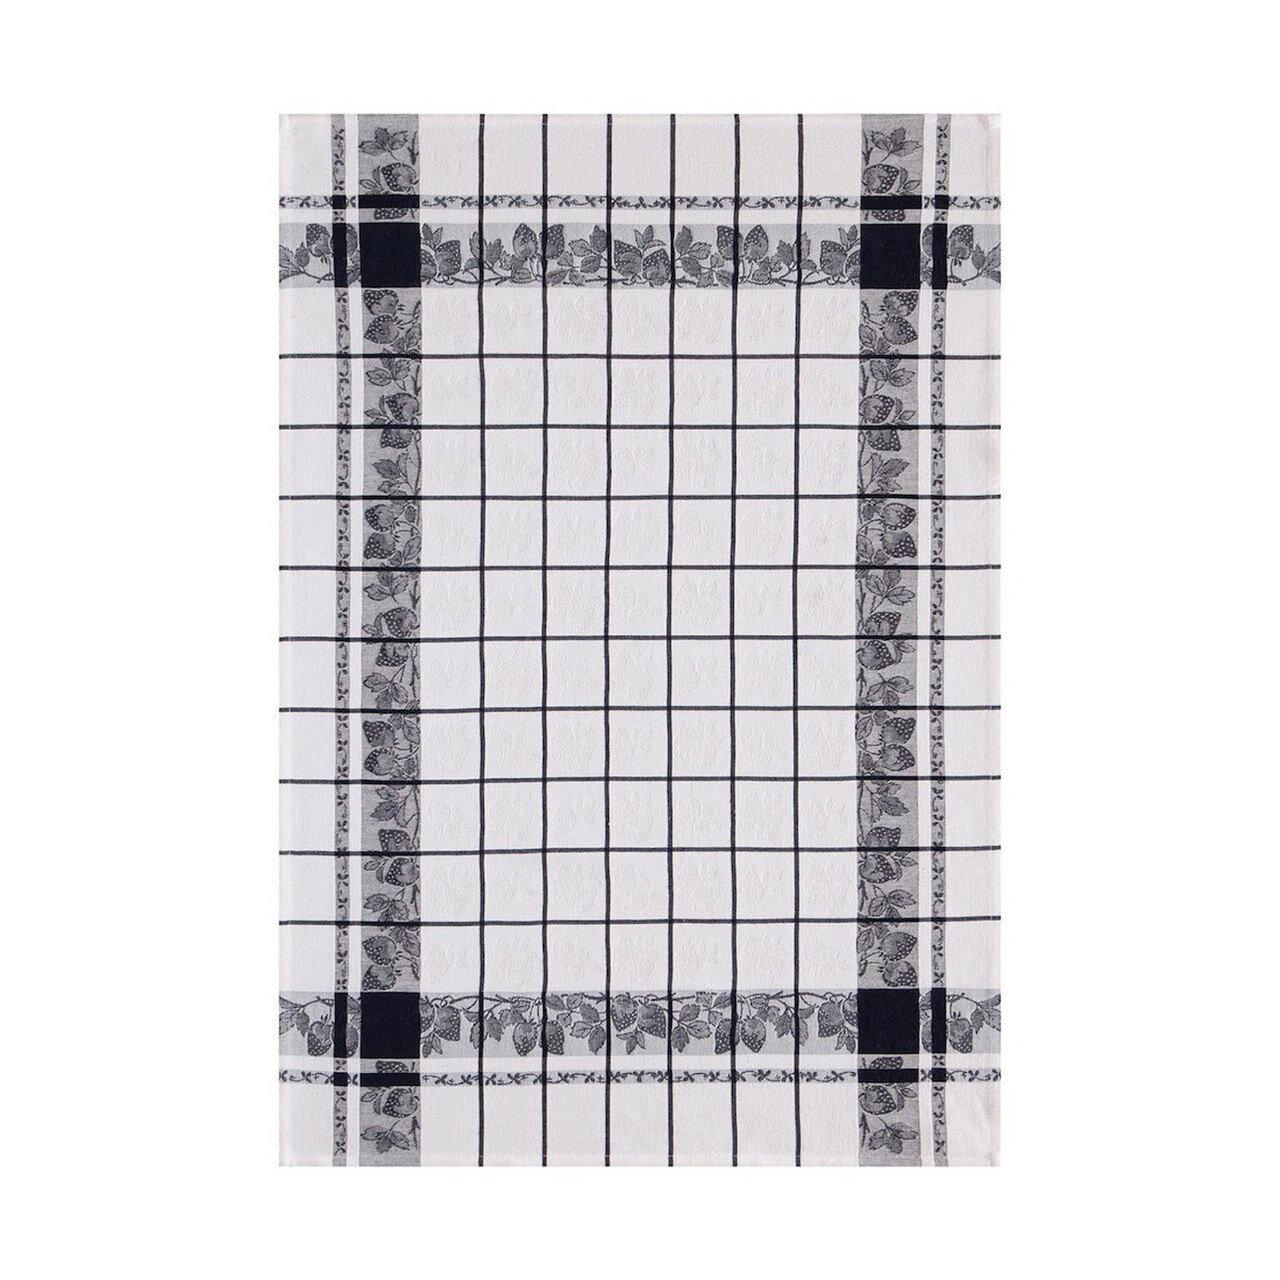 Le Jacquard Francais Fraises Black Tea Towel 24 x 31 Set of 4